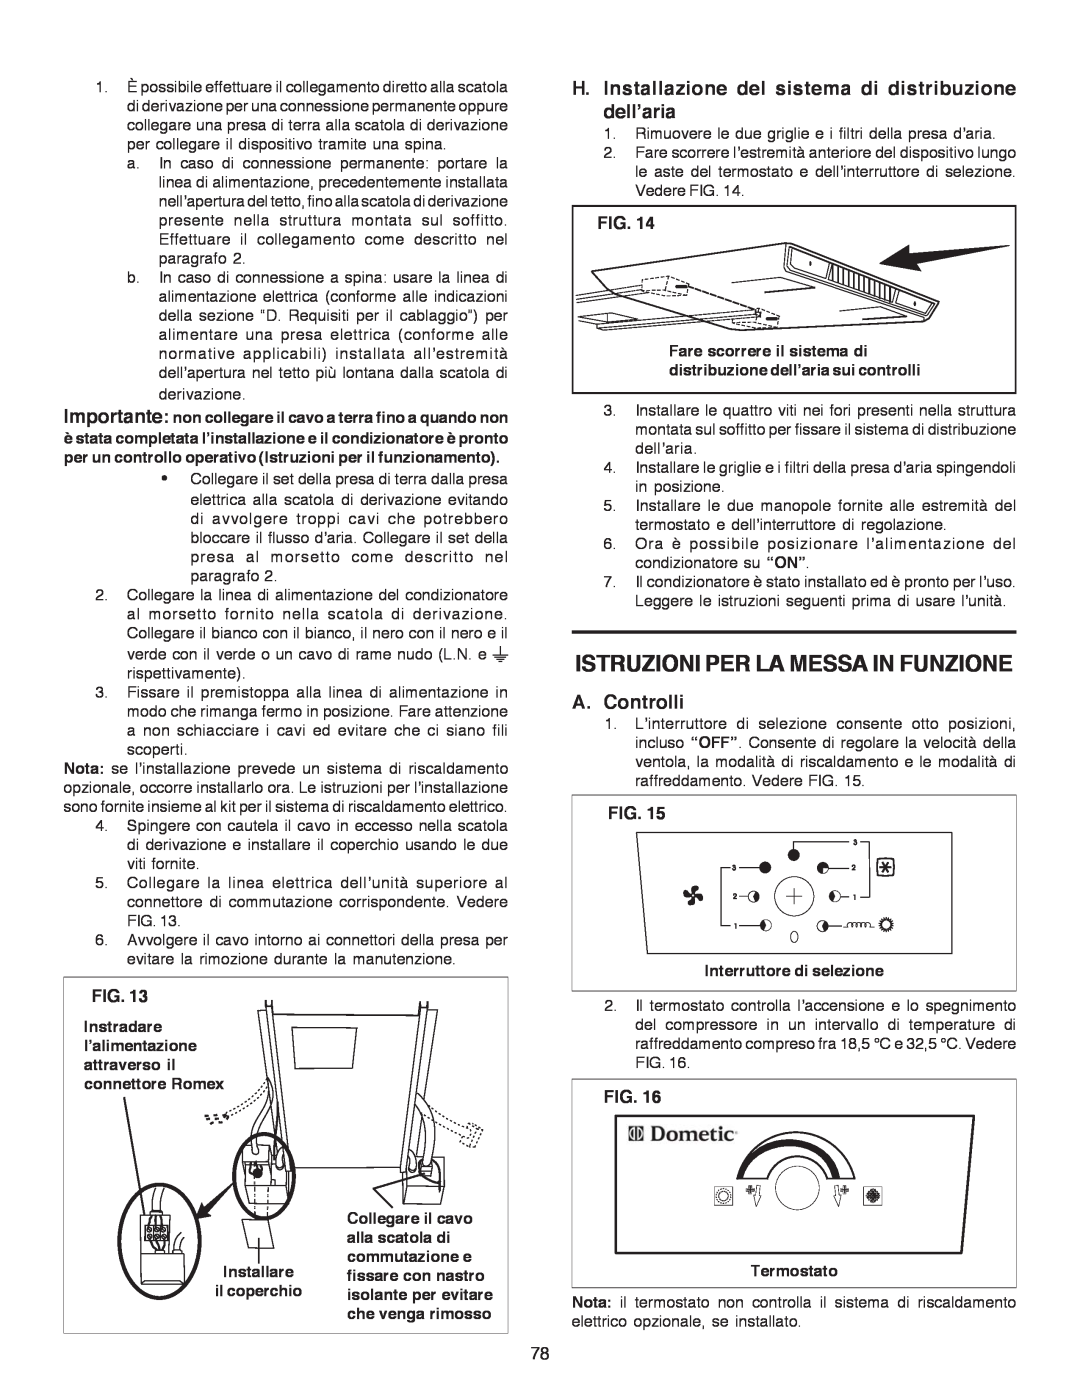 Dometic B3200 manual Istruzioni Per La Messa In Funzione, A.Controlli, Fig 